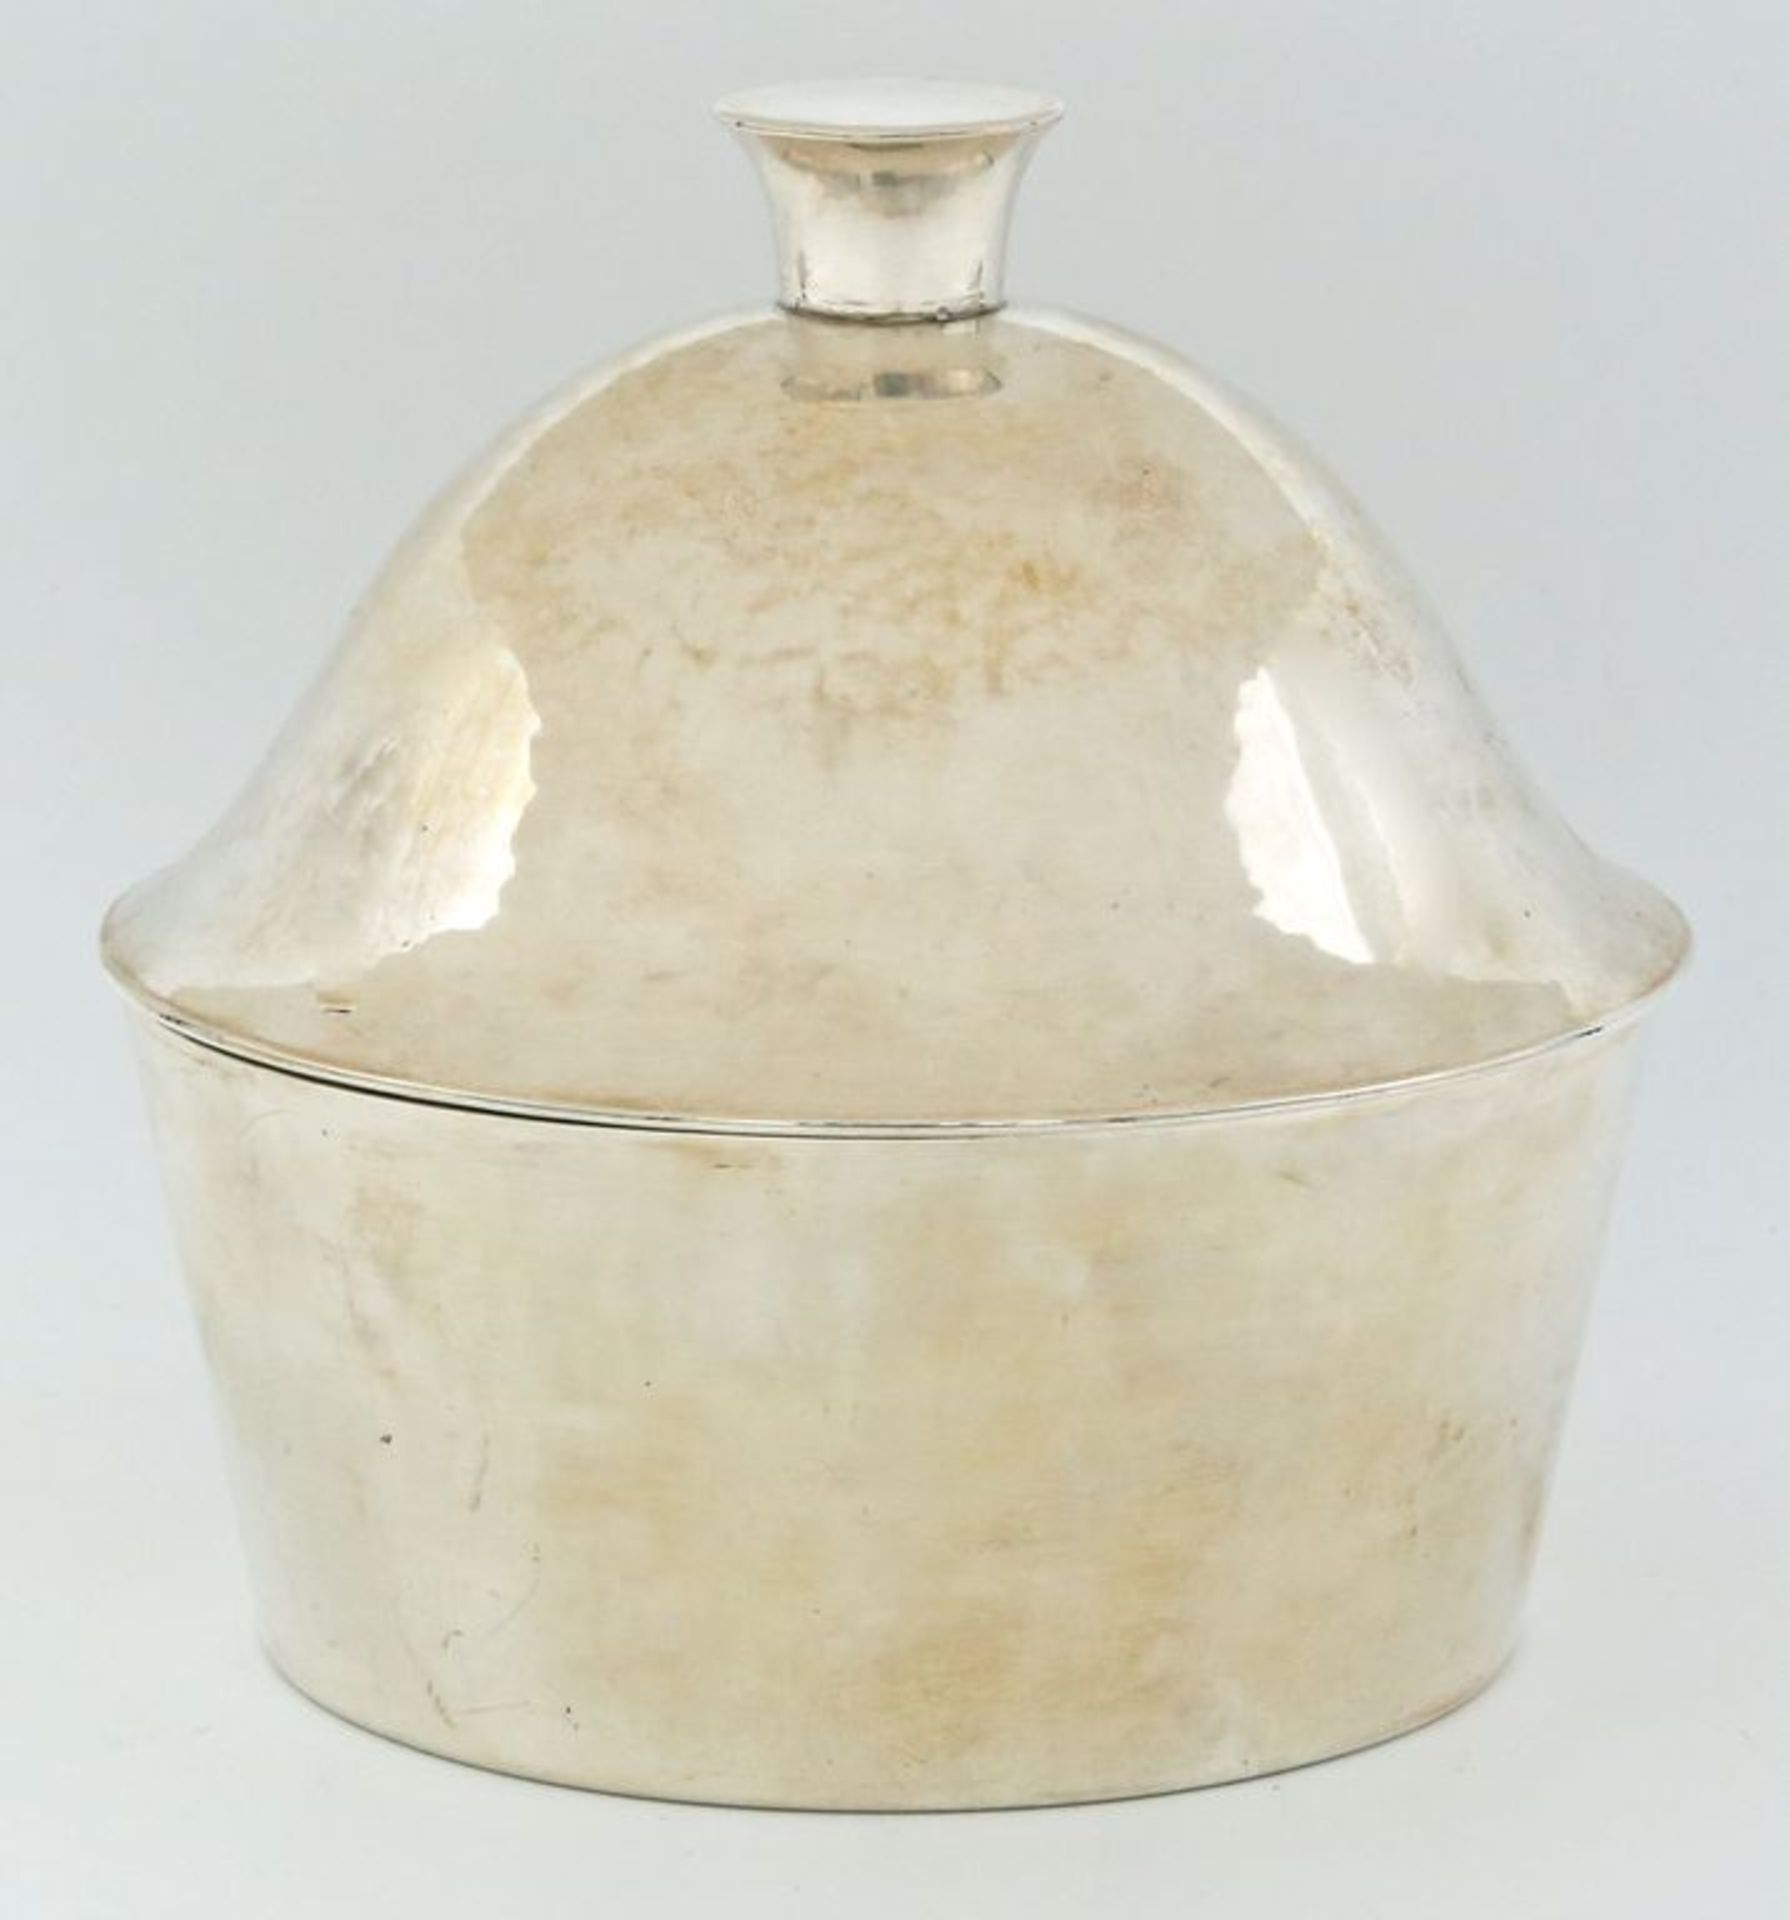 Roth, Emmy (1885 Hattingen - Tel Aviv 1942) Deckeldose. 800/000 Silber, 563 g. Zylindrische,